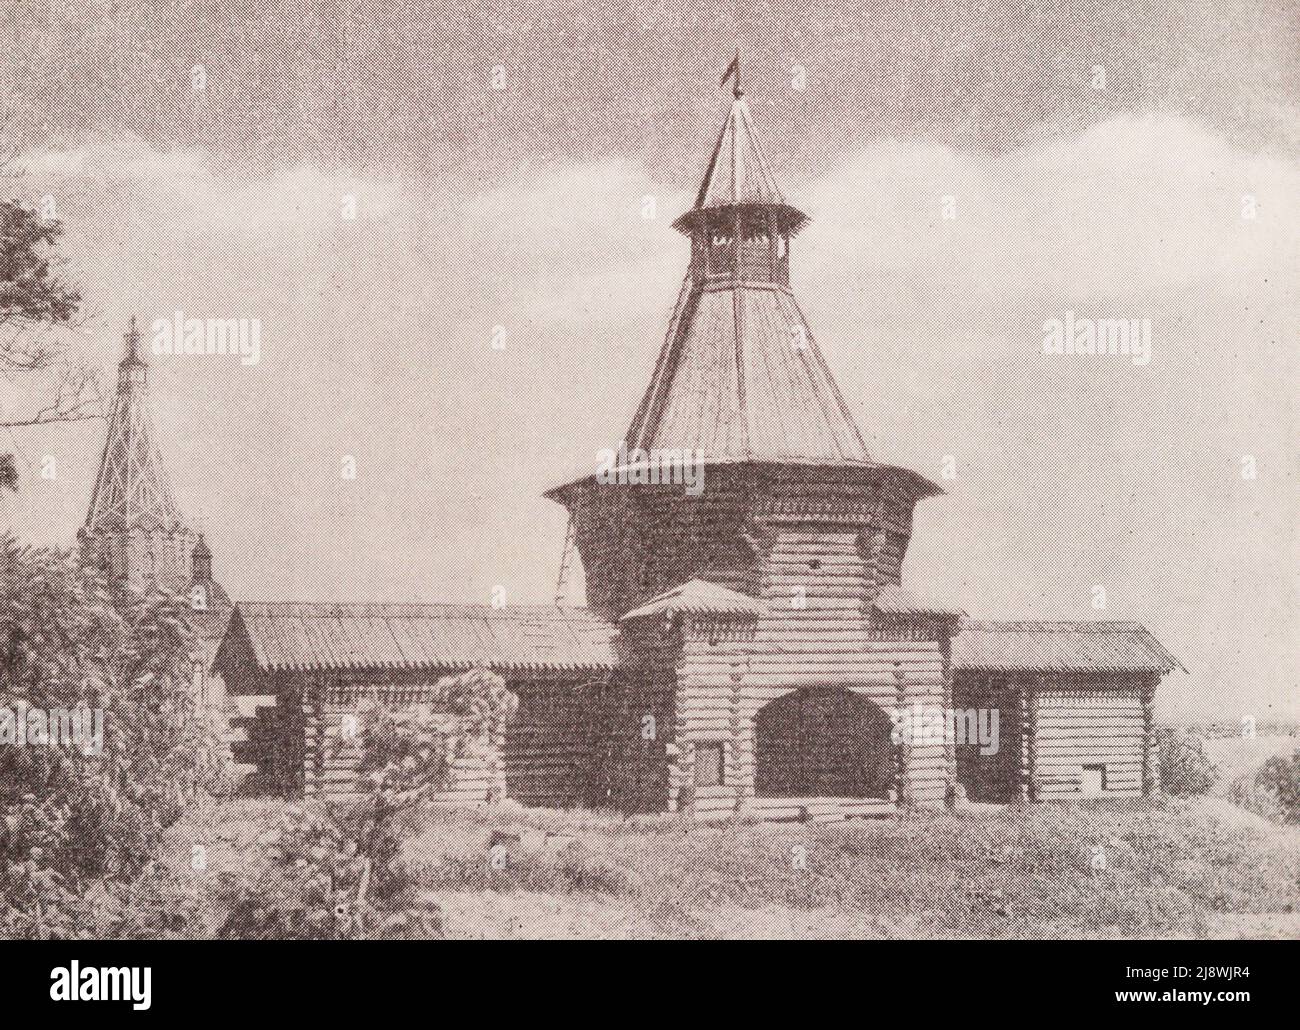 Der Torturm der Mauer des Nikolo-Korelsky-Klosters. Foto vom Ende des 19.. Jahrhunderts. Stockfoto